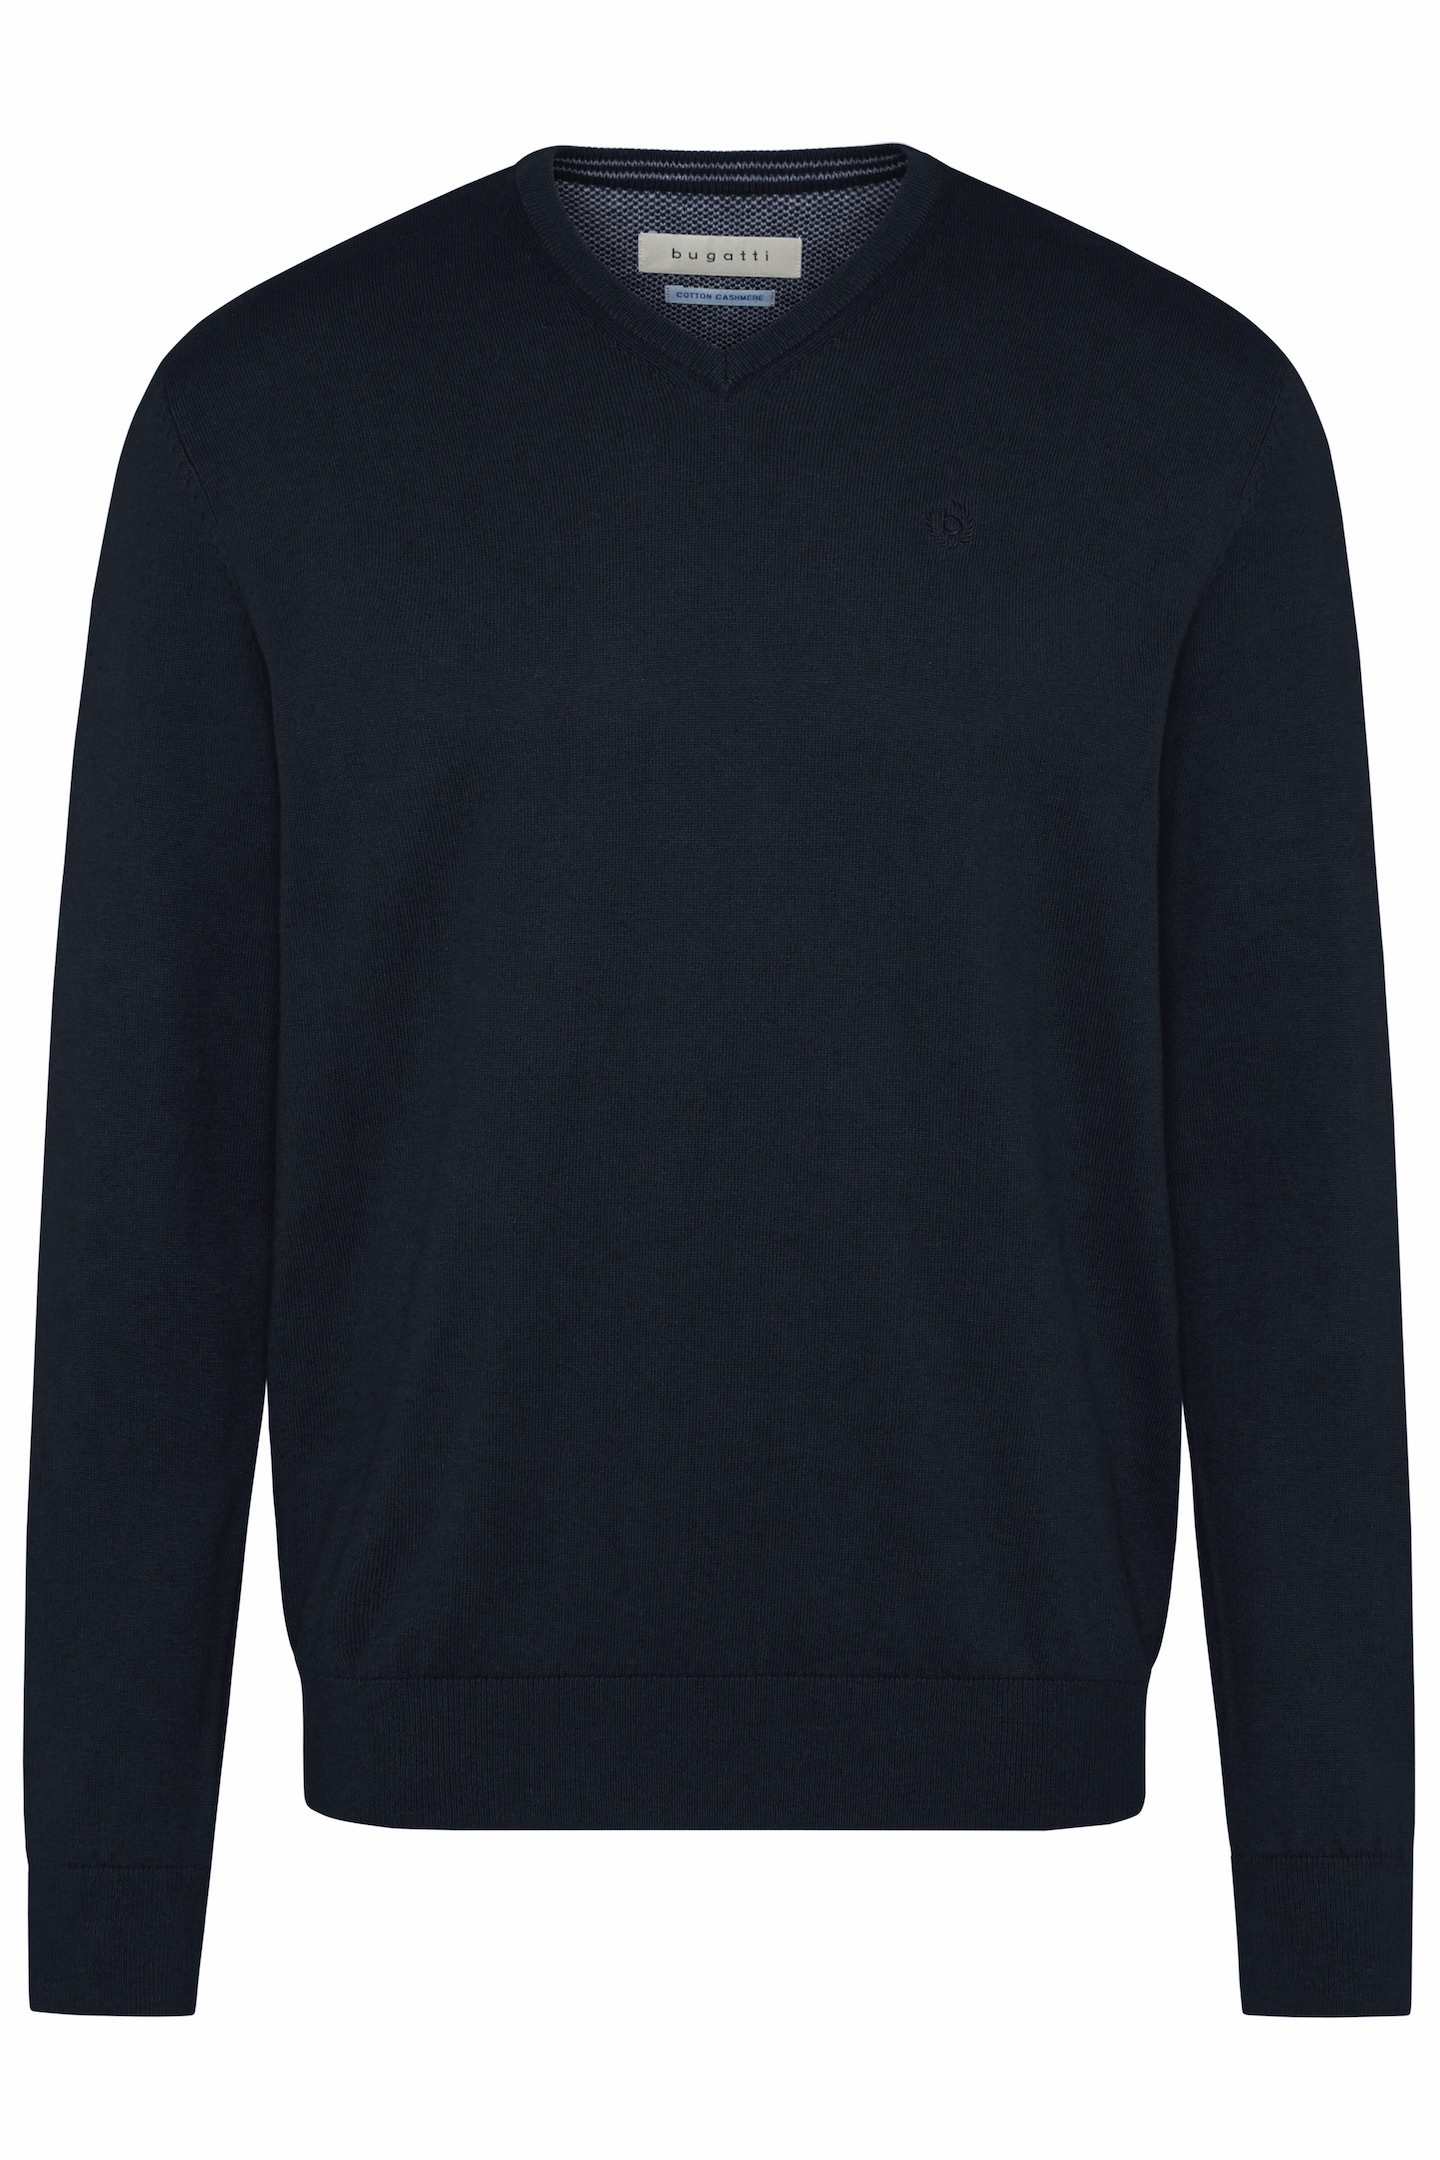 ➤ Pullover versandkostenfrei - ohne Mindestbestellwert bestellen